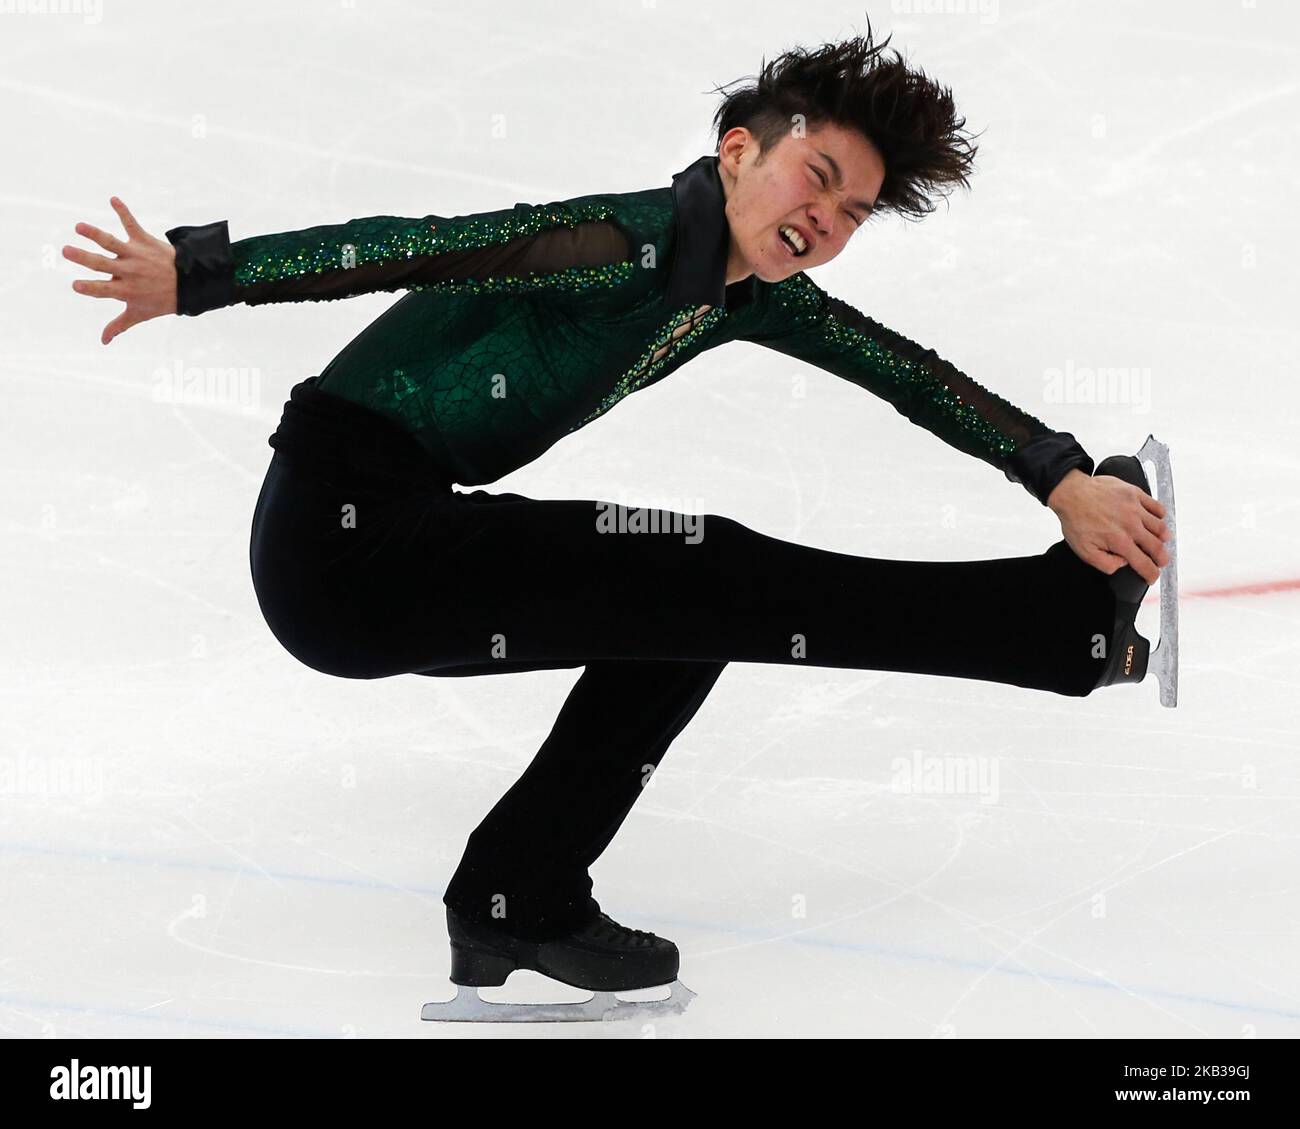 Kazuki Tomono, du Japon, se produit en patinage libre masculin lors du Grand Prix de patinage artistique de l'UIP Rostelecom Cup à Moscou, en Russie, le 18 novembre 2018. (Photo par Igor Russak/NurPhoto) Banque D'Images